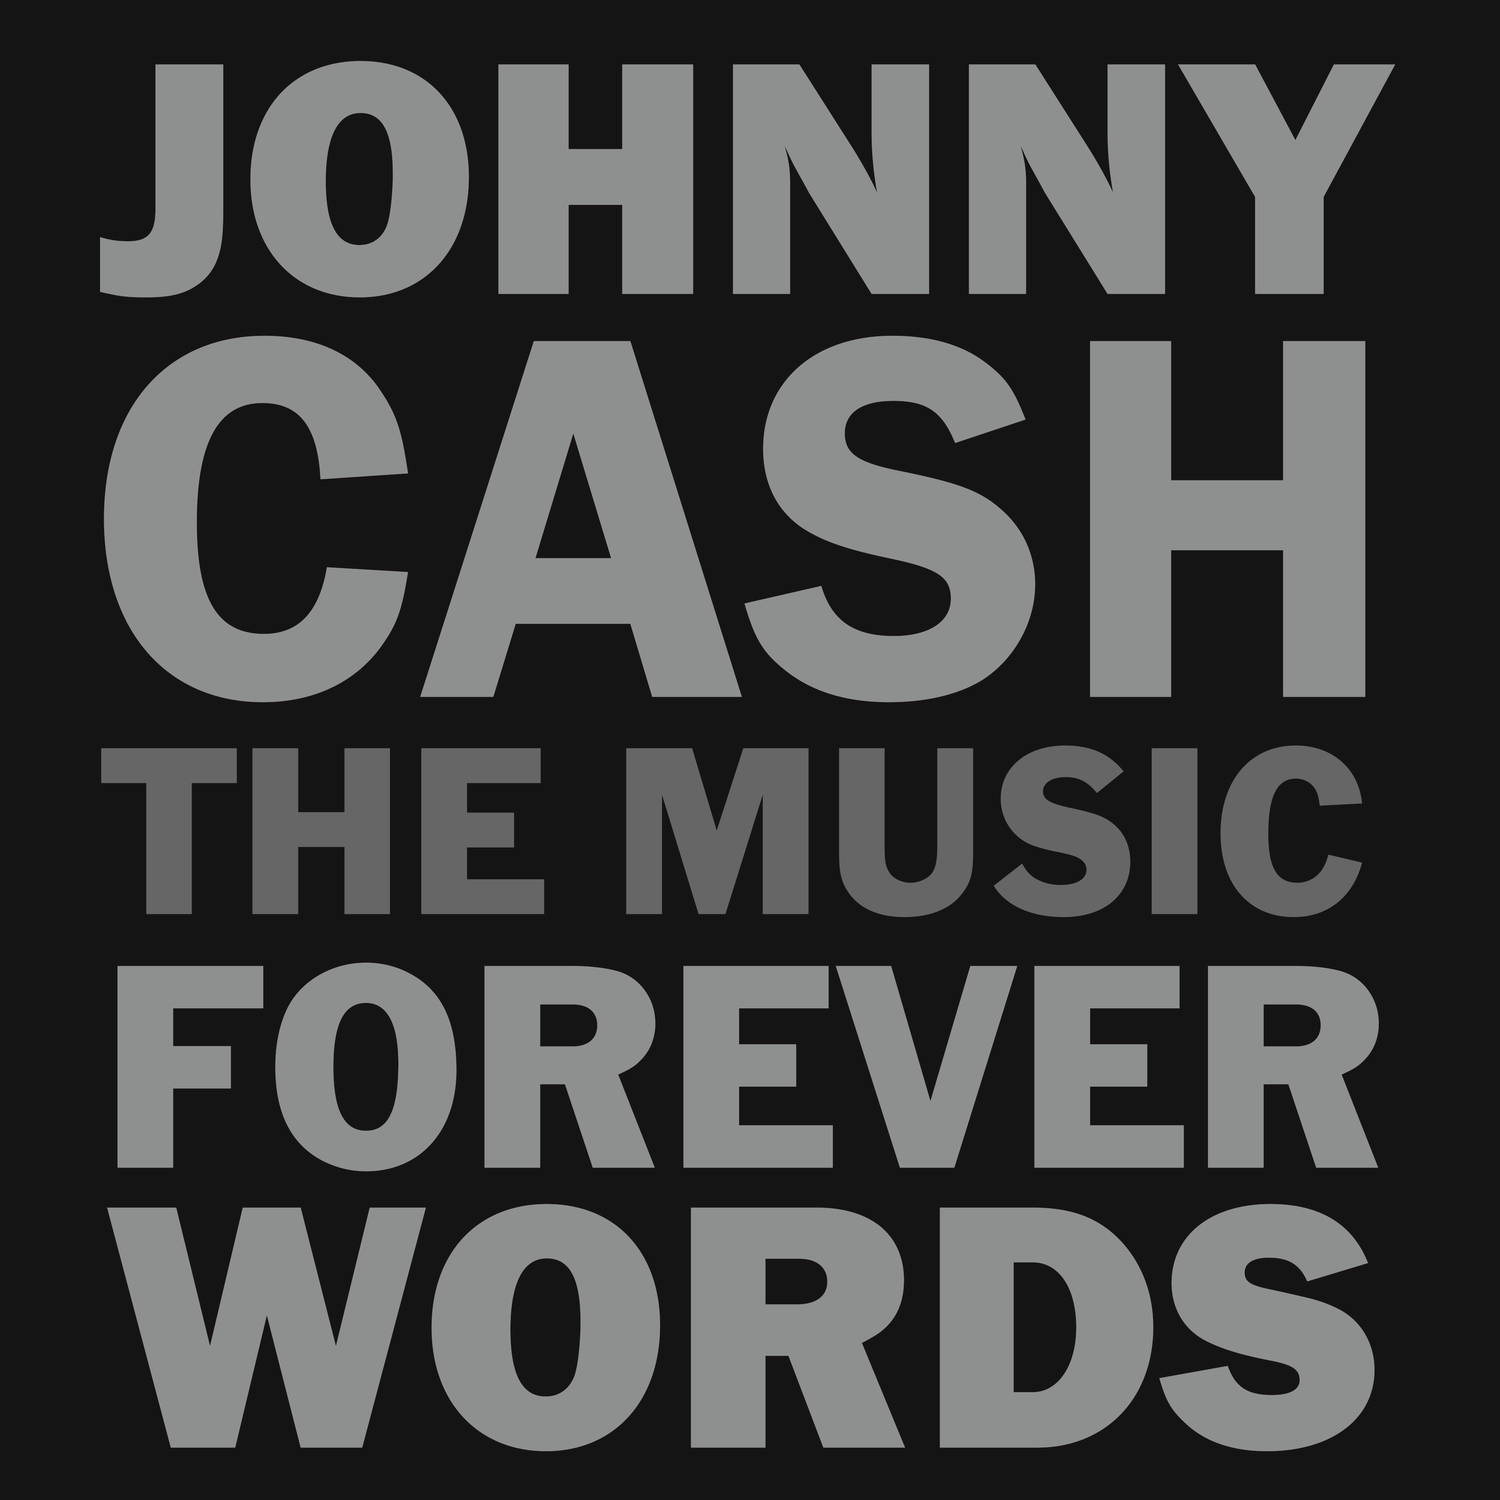 Forever Words - The Music (vinyl)